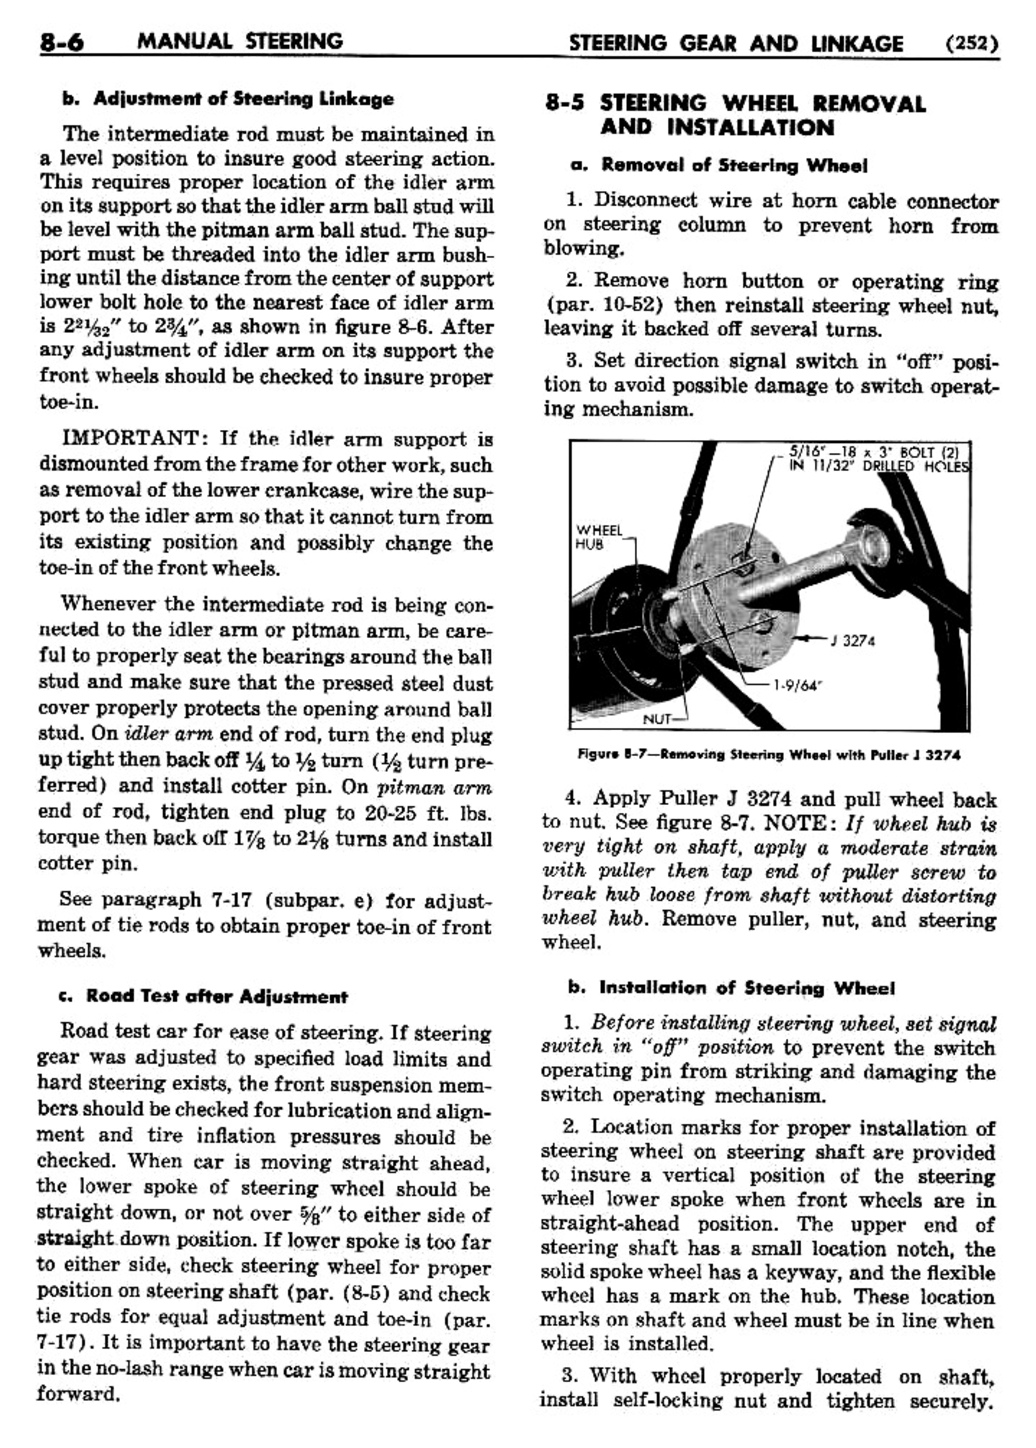 n_09 1955 Buick Shop Manual - Steering-006-006.jpg